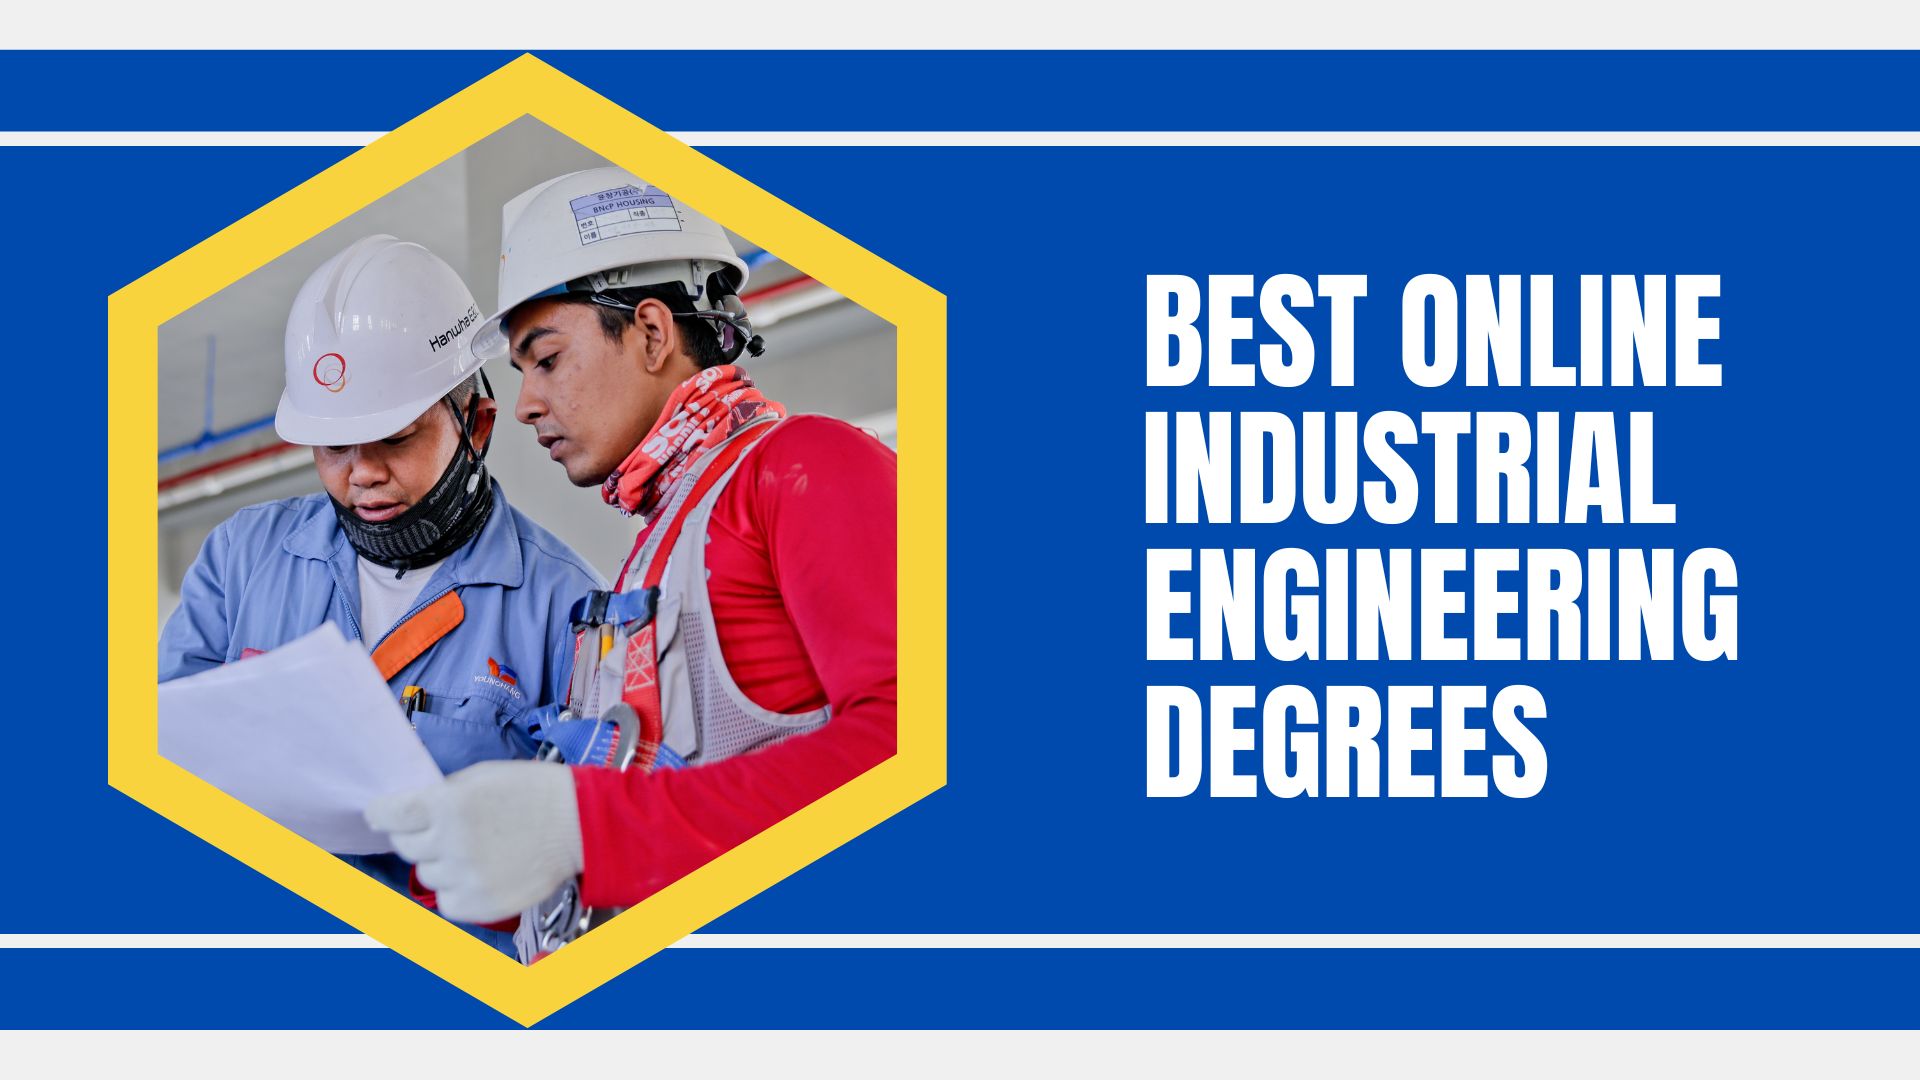 Best Online Industrial Engineering Degrees